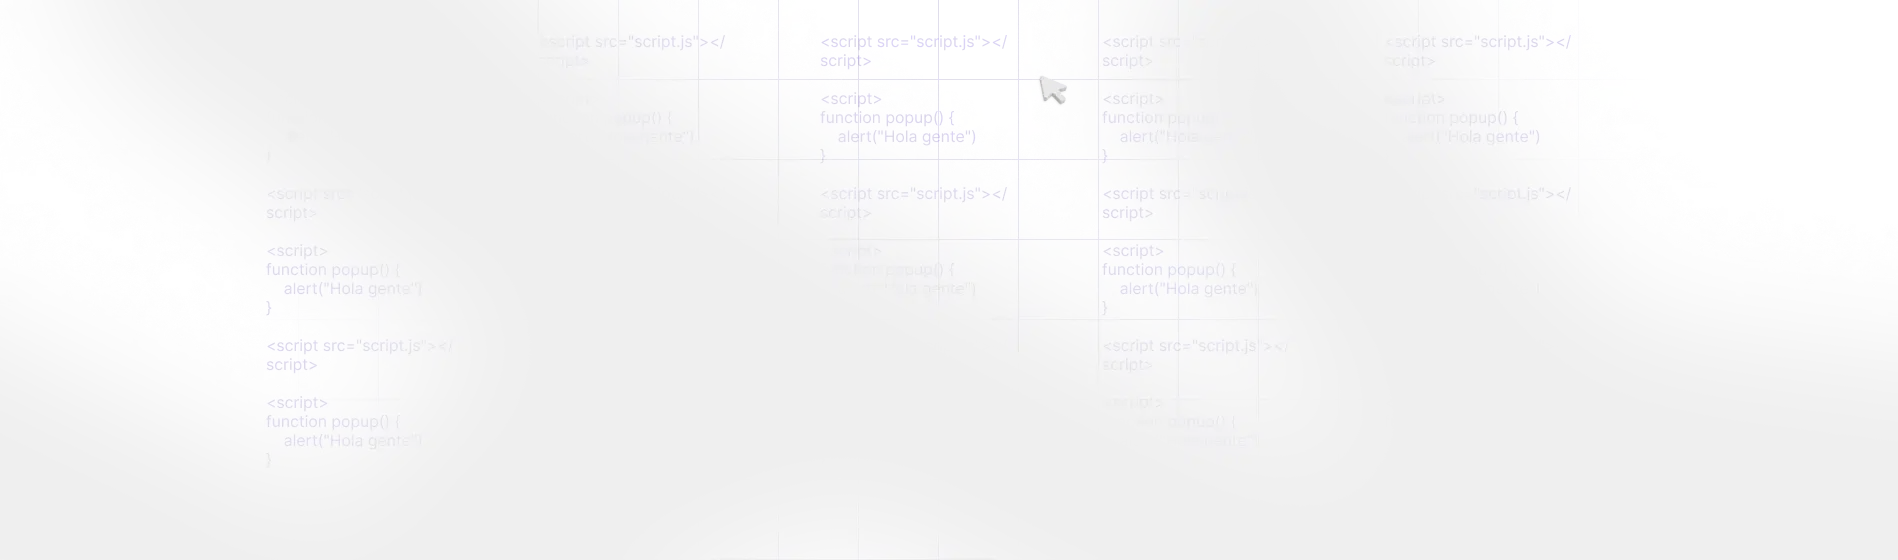 imagen de fondo que representa el curso de javascript